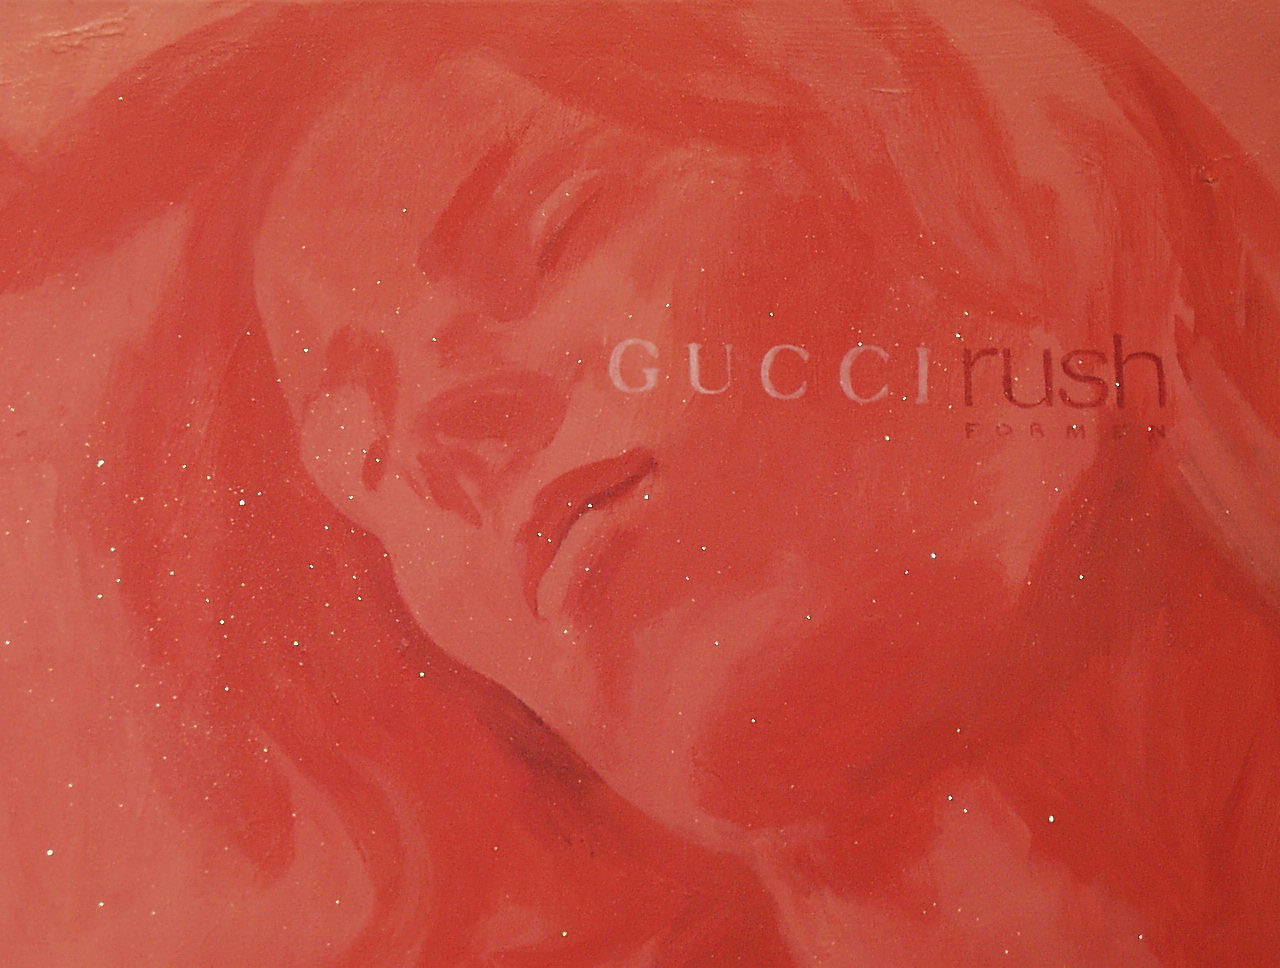 Agnieszka Brzeżańska - Gucci-Rush (Oil on Canvas | Size: 106 x 76 cm | Price: 13000 PLN)